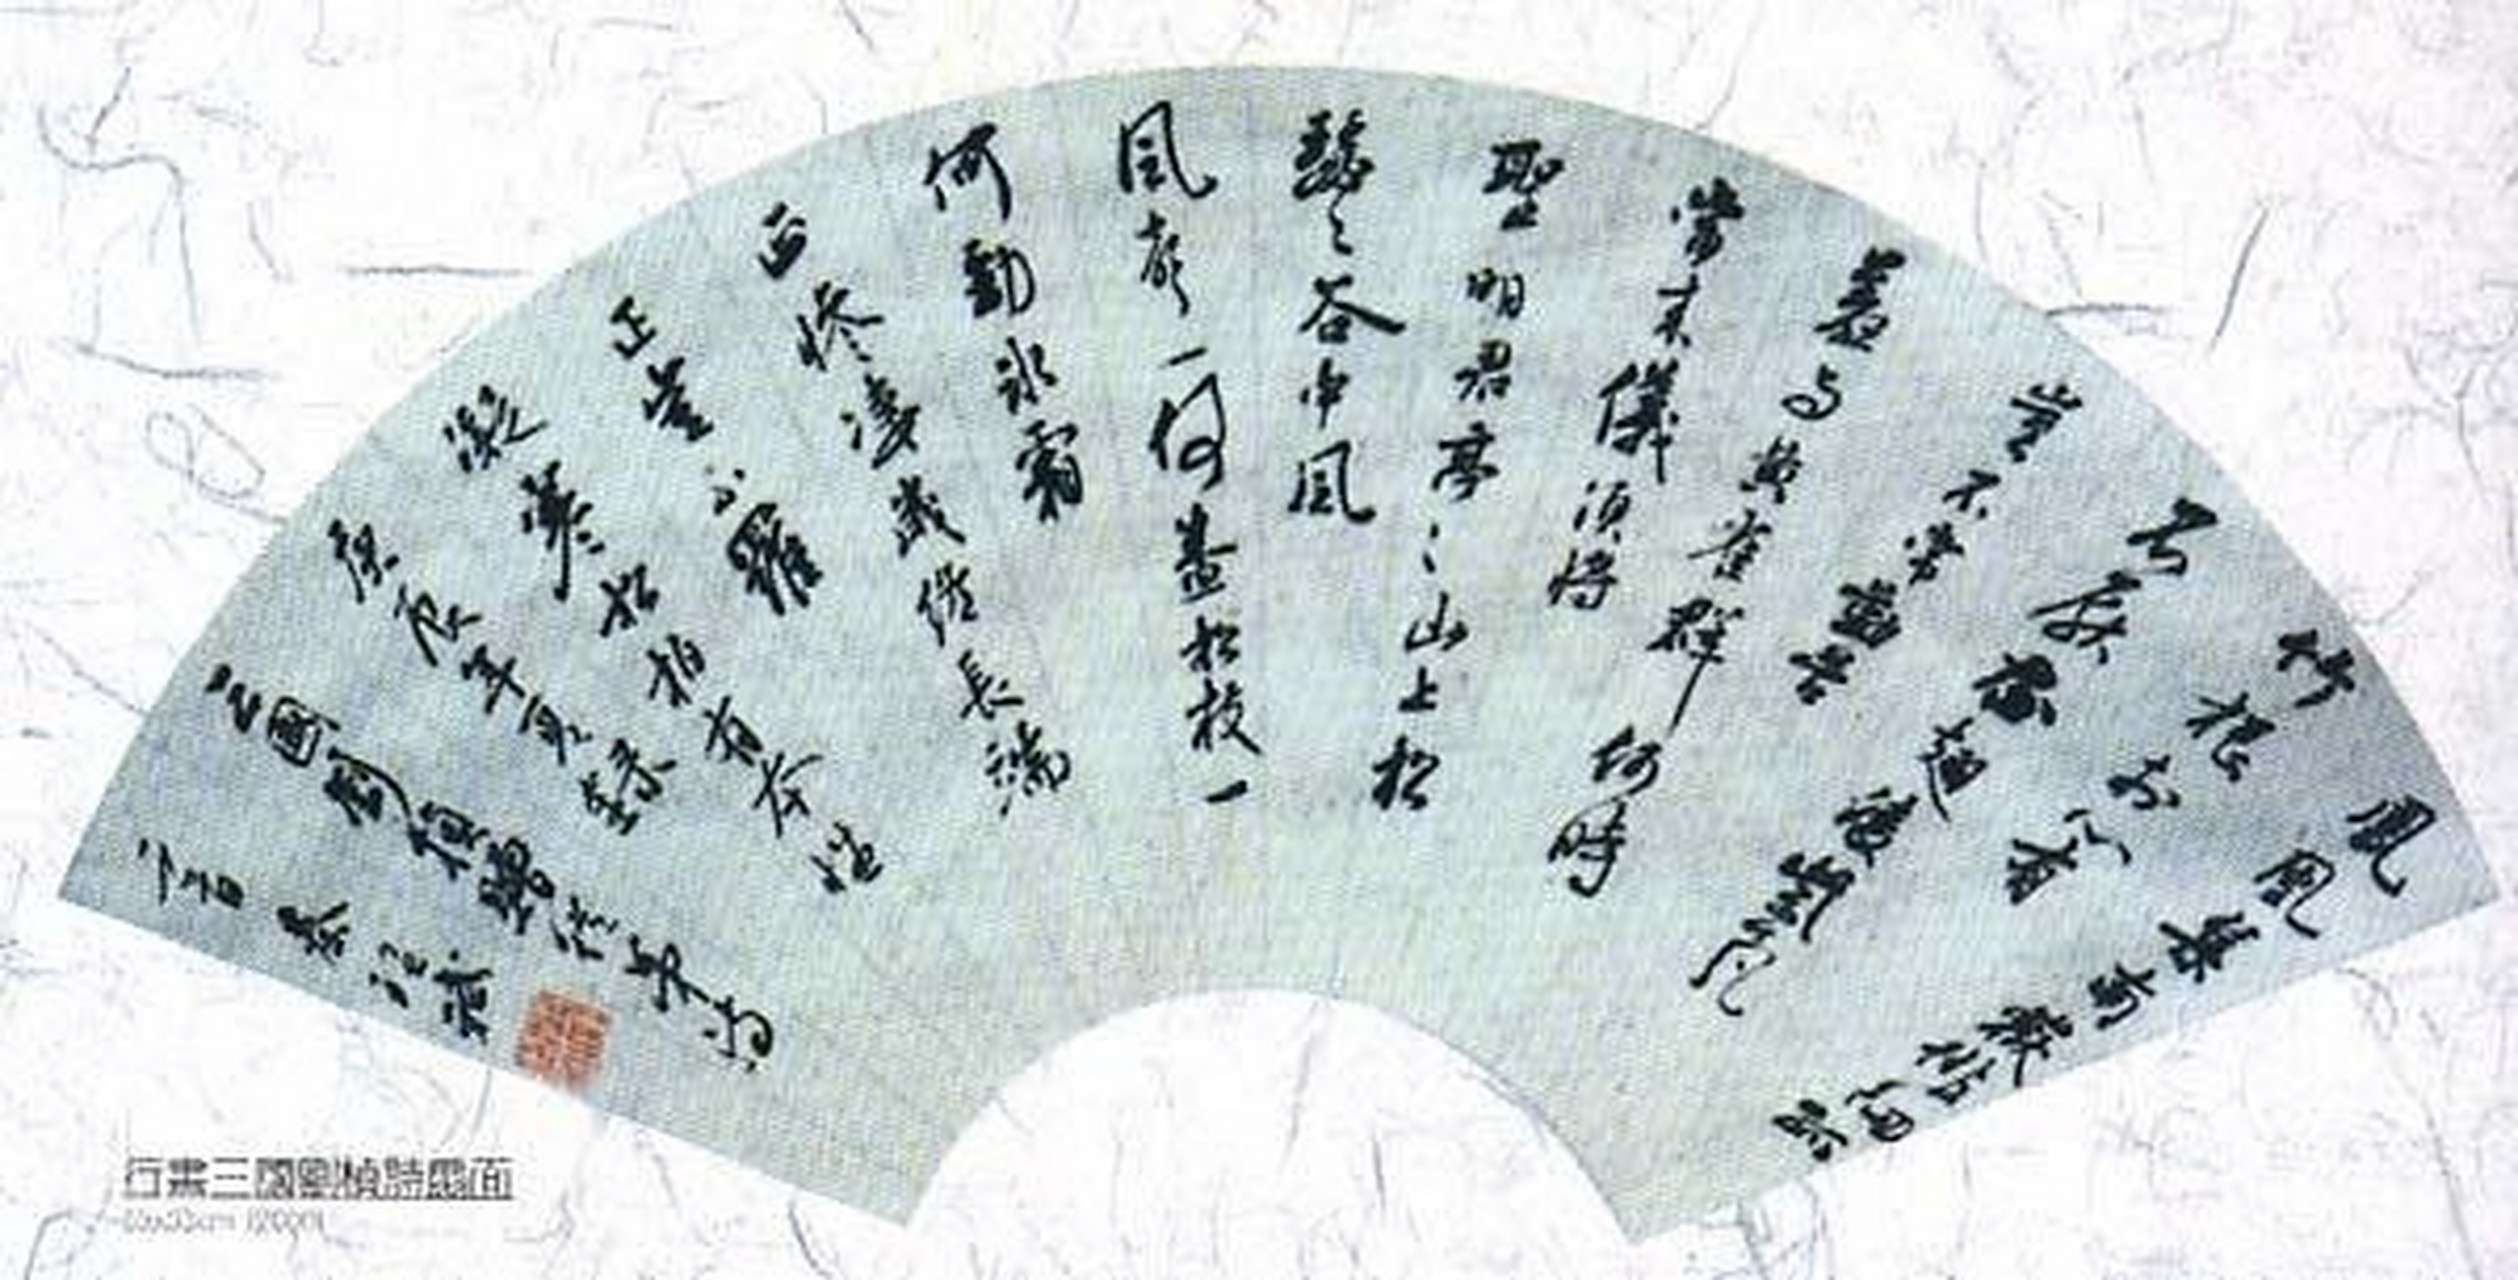 建安七子刘桢  刘桢(186―217),字公干,东汉末年东平宁阳(今山东宁阳